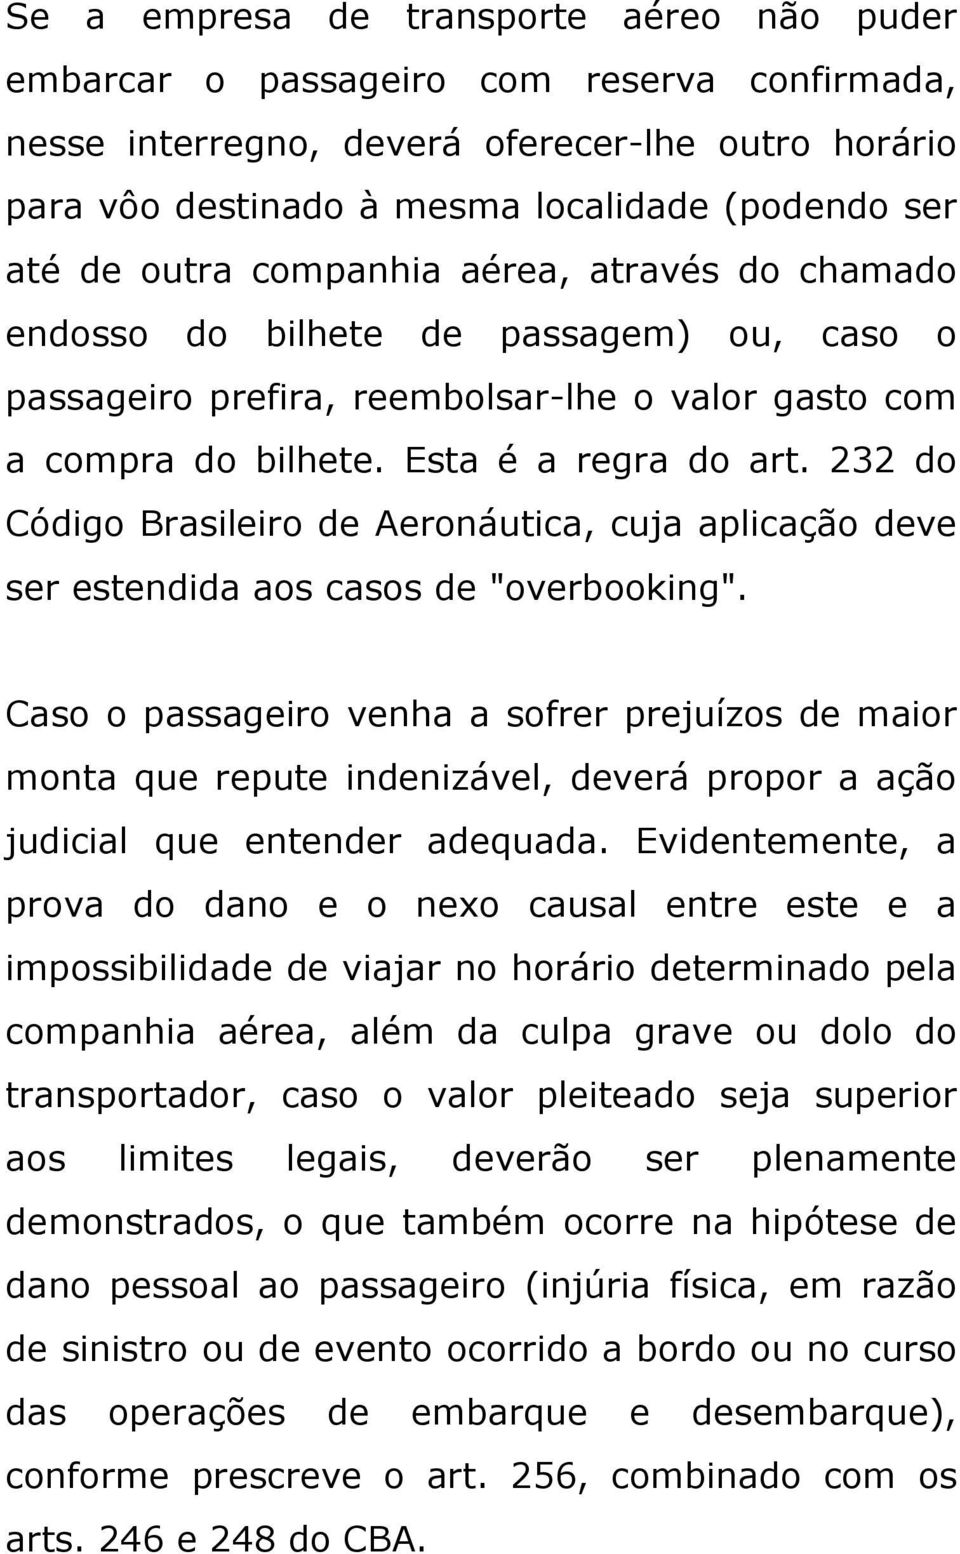 232 do Código Brasileiro de Aeronáutica, cuja aplicação deve ser estendida aos casos de "overbooking".